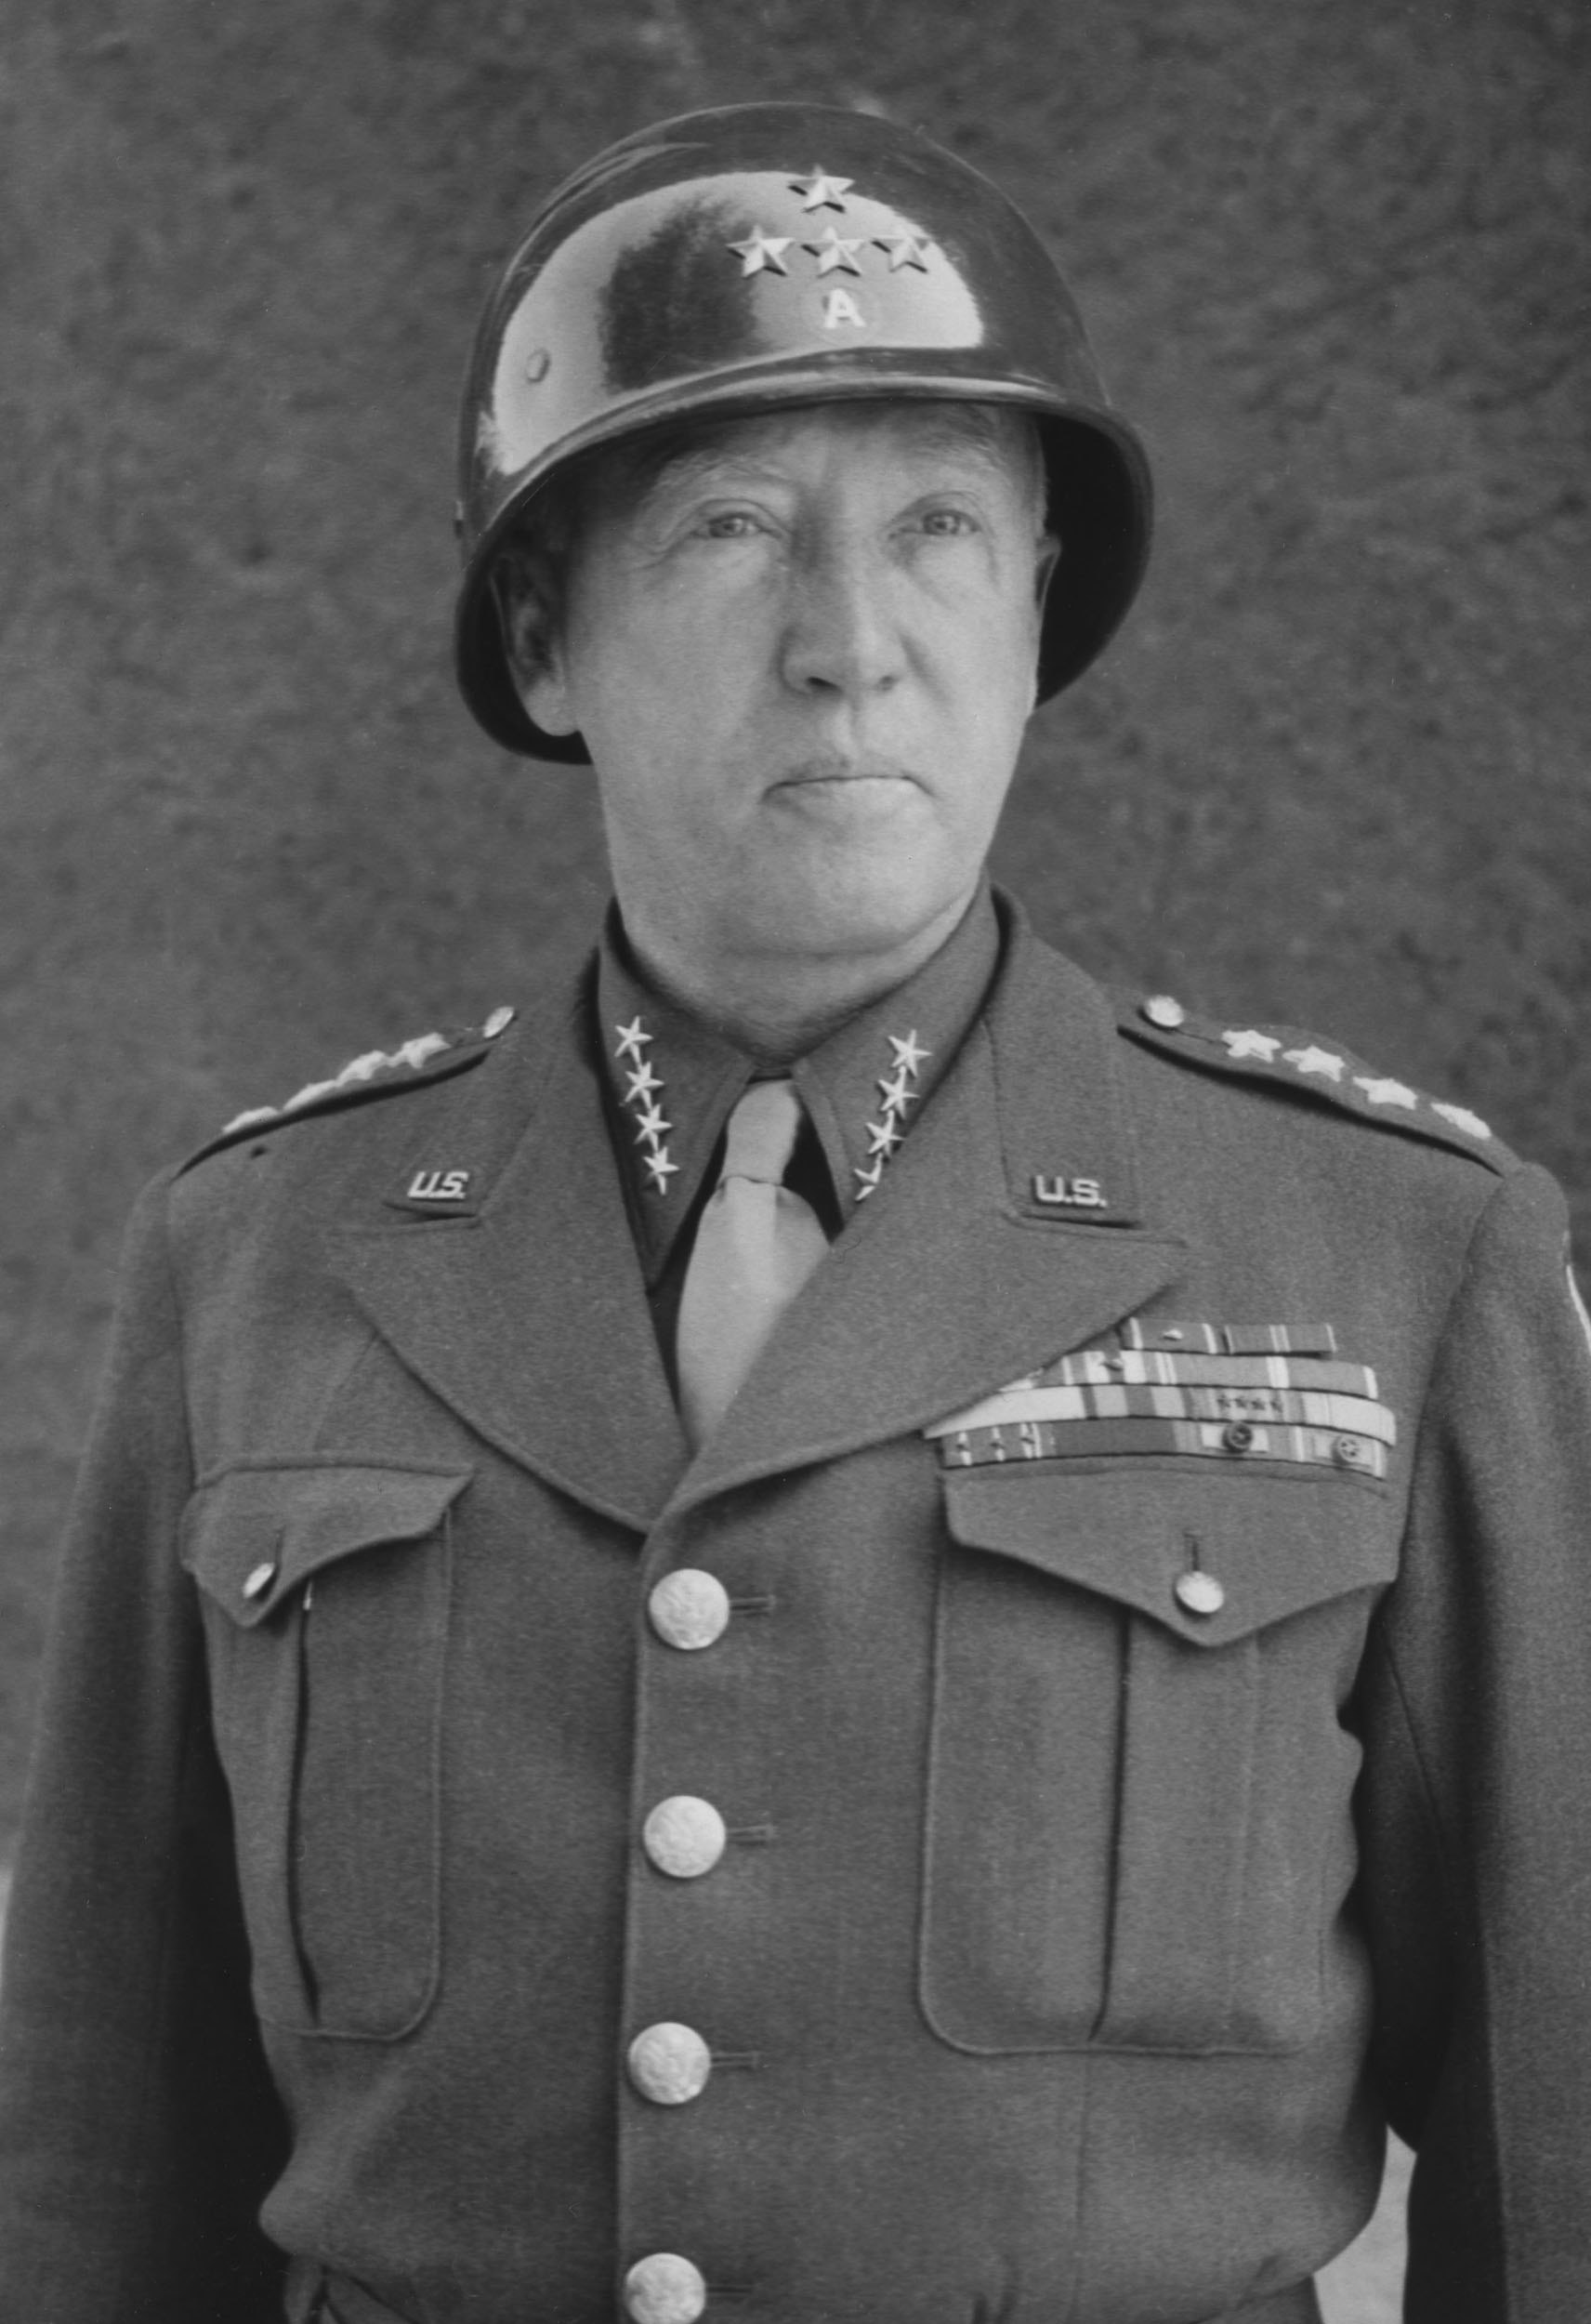 Î‘Ï€Î¿Ï„Î­Î»ÎµÏƒÎ¼Î± ÎµÎ¹ÎºÏŒÎ½Î±Ï‚ Î³Î¹Î± general Patton